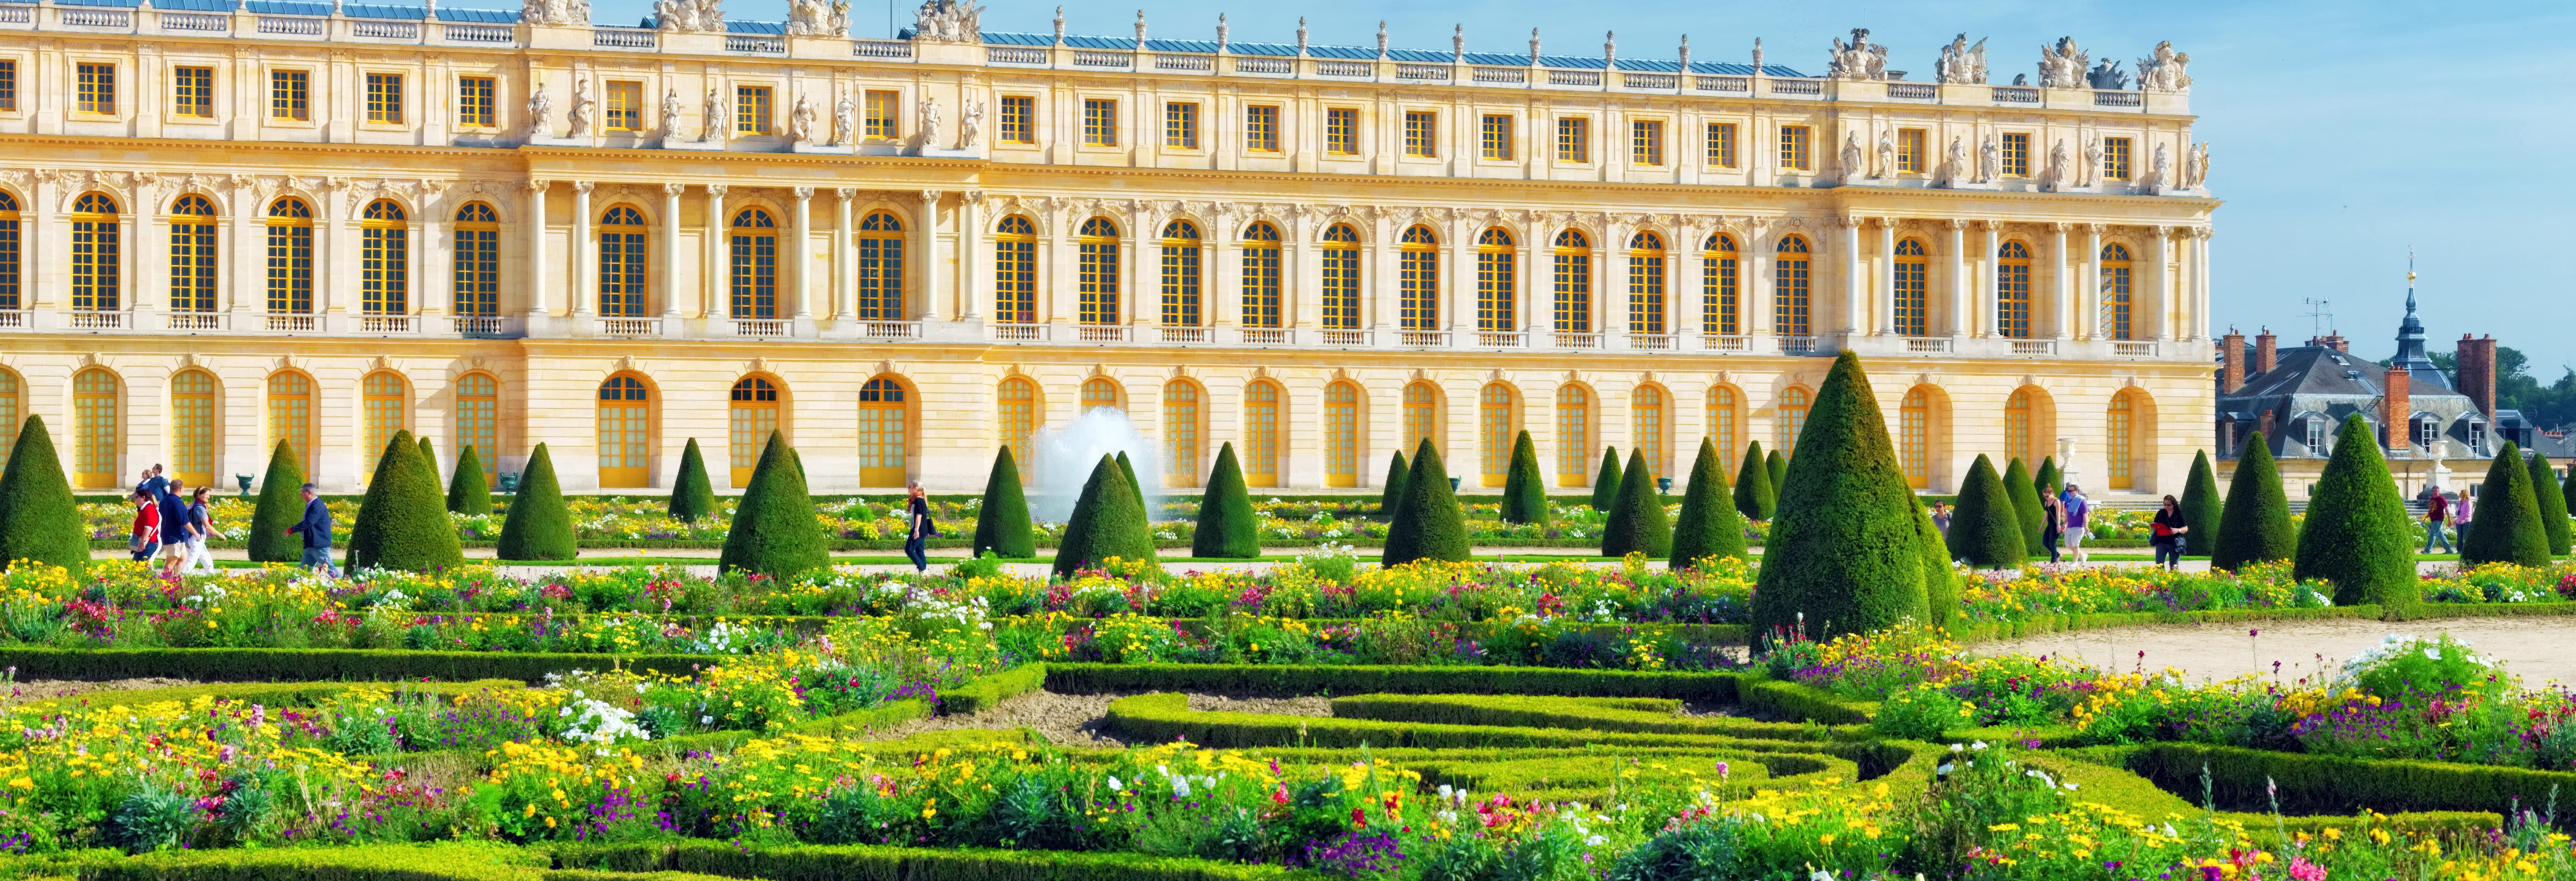 Visite guidée d'une journée du château de Versailles - accès réservé - transport inclus depuis Paris